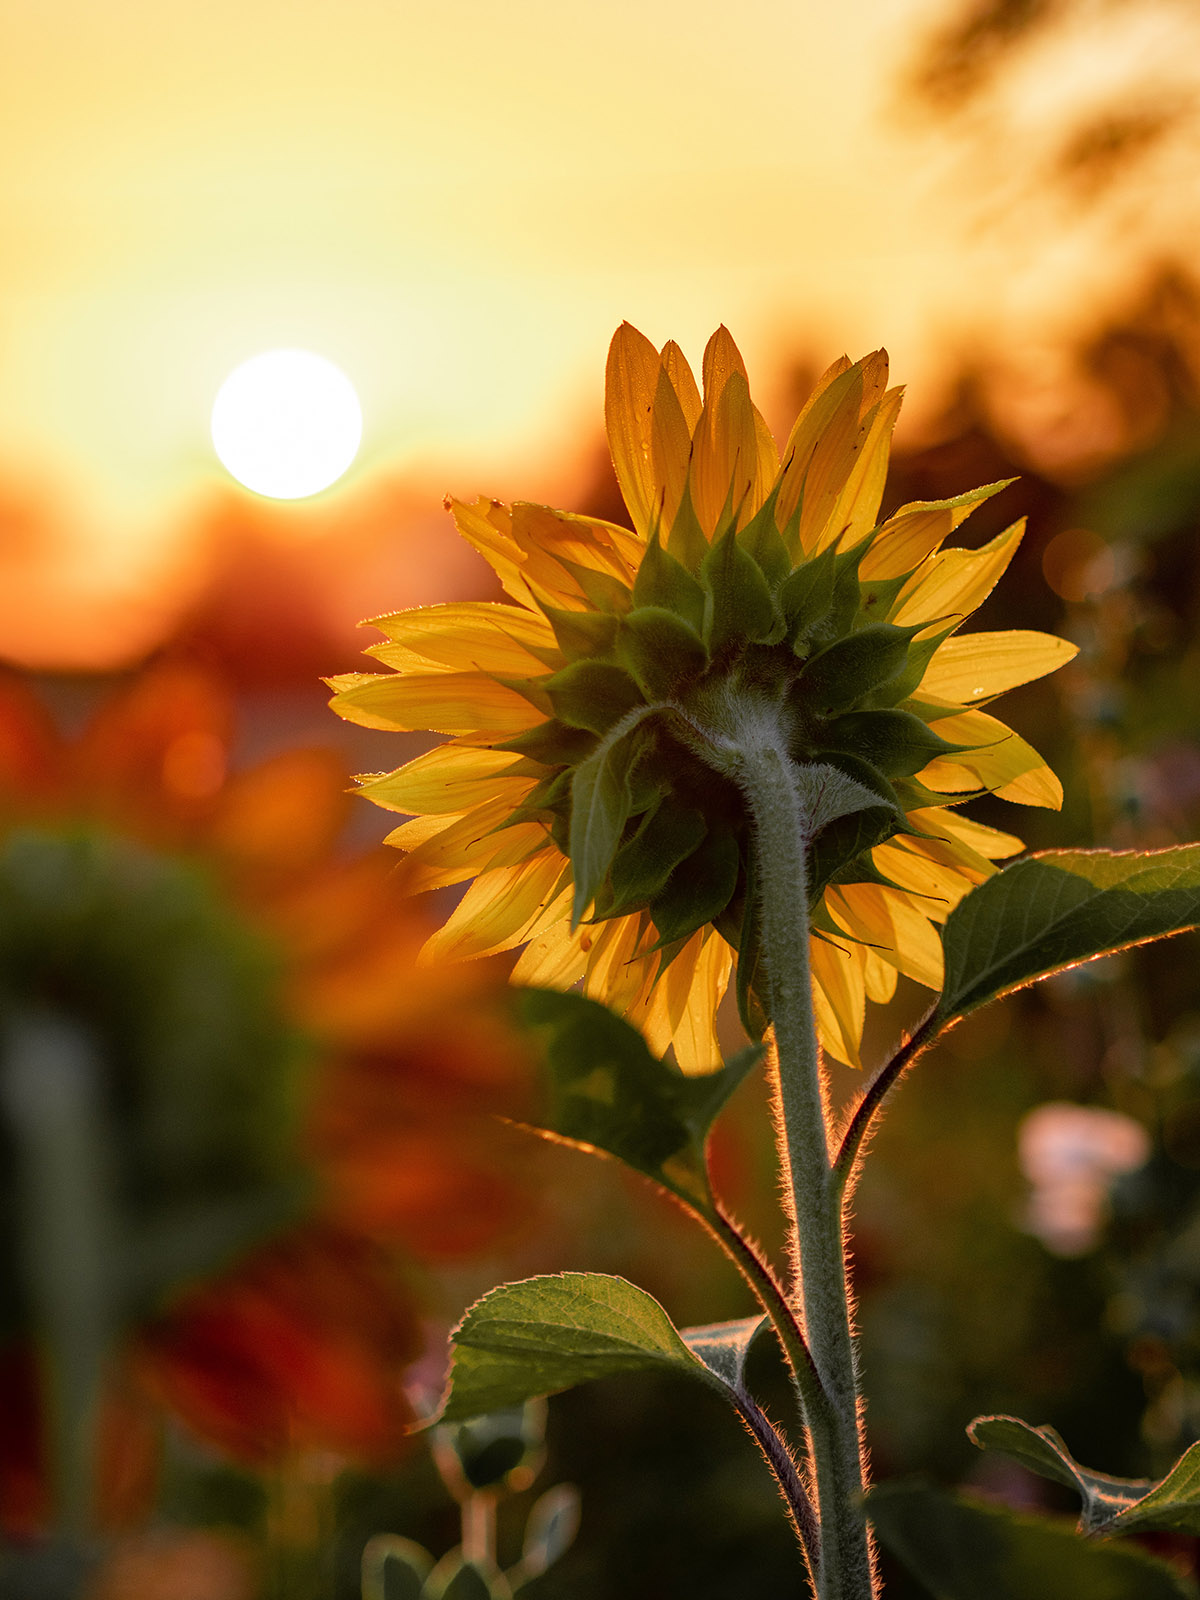 Sunflower follows the sun on Thursd